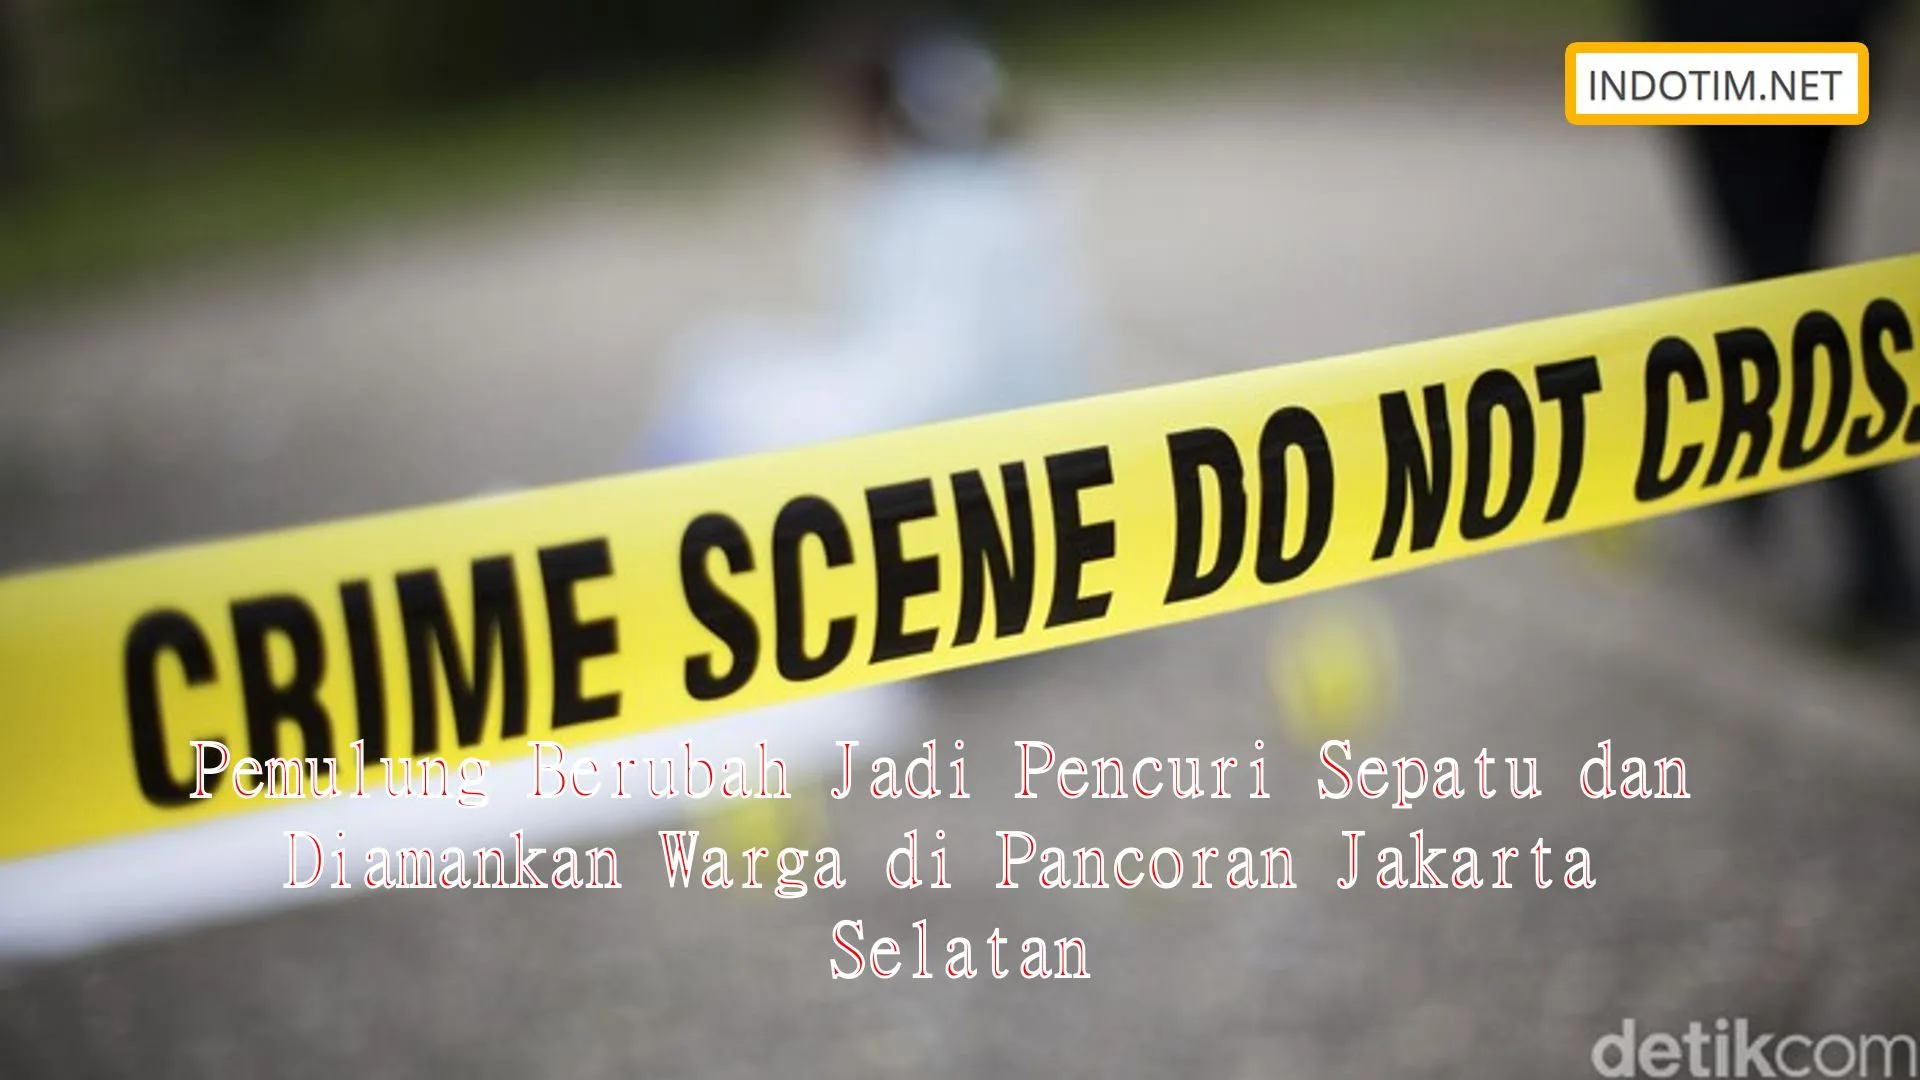 Pemulung Berubah Jadi Pencuri Sepatu dan Diamankan Warga di Pancoran Jakarta Selatan